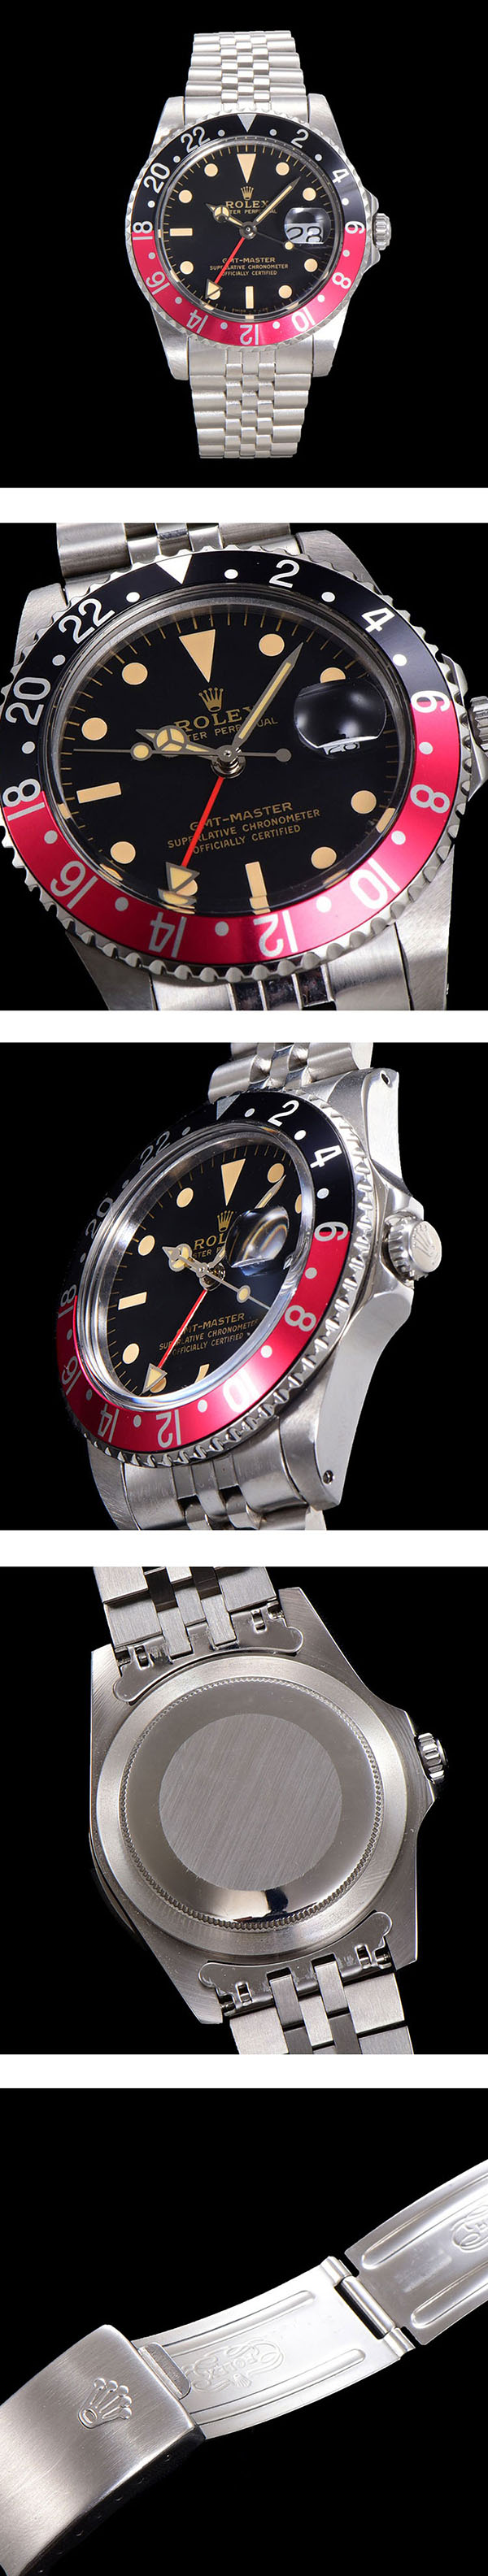 新着ロレックス GMTマスターコピー時計 Ref.6542、相当安値！